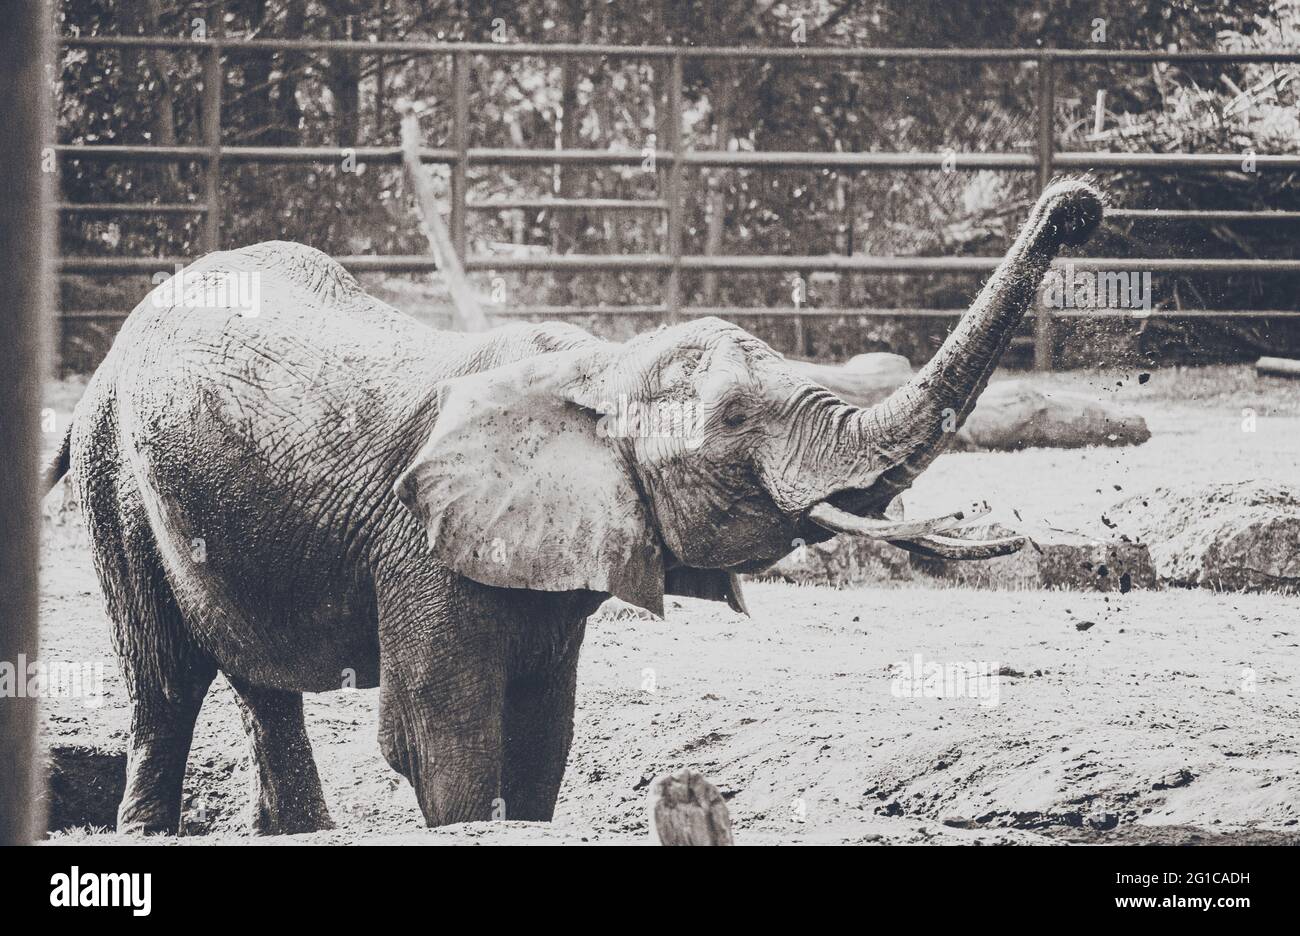 Verspielter Elefant im Serengeti Tierpark - Nahaufnahme des zahmen Dickhäuters in schönem schwarzweiss monochrom Style Poster. Minimalismus Stil. Stock Photo